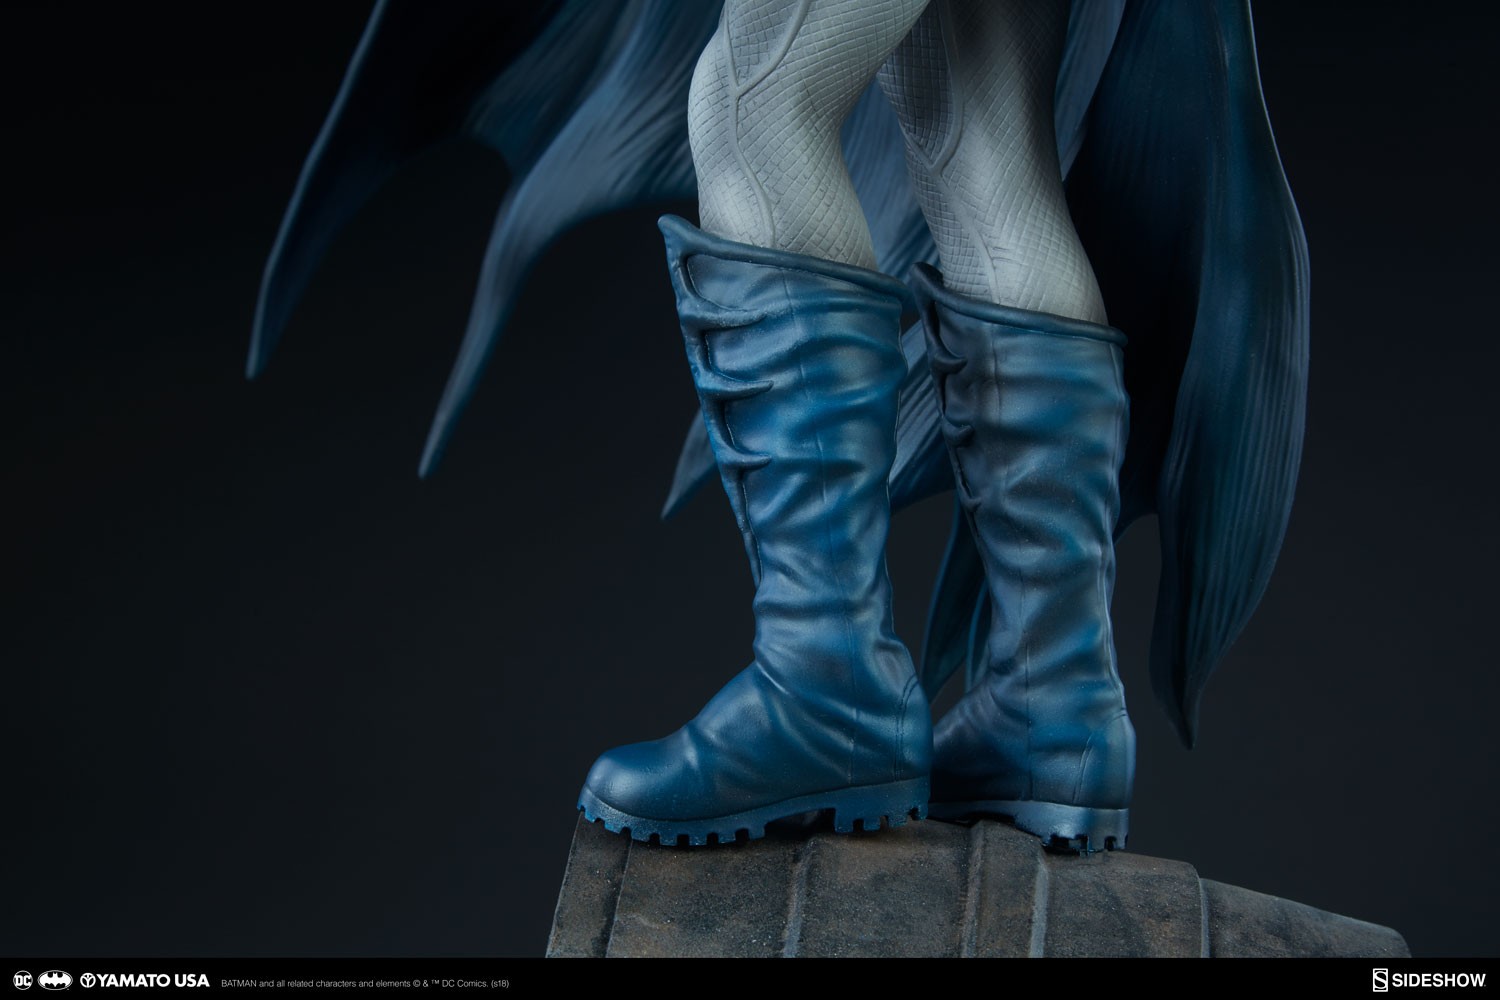 Batman Blue Version Exclusive Edition (Prototype Shown) View 6